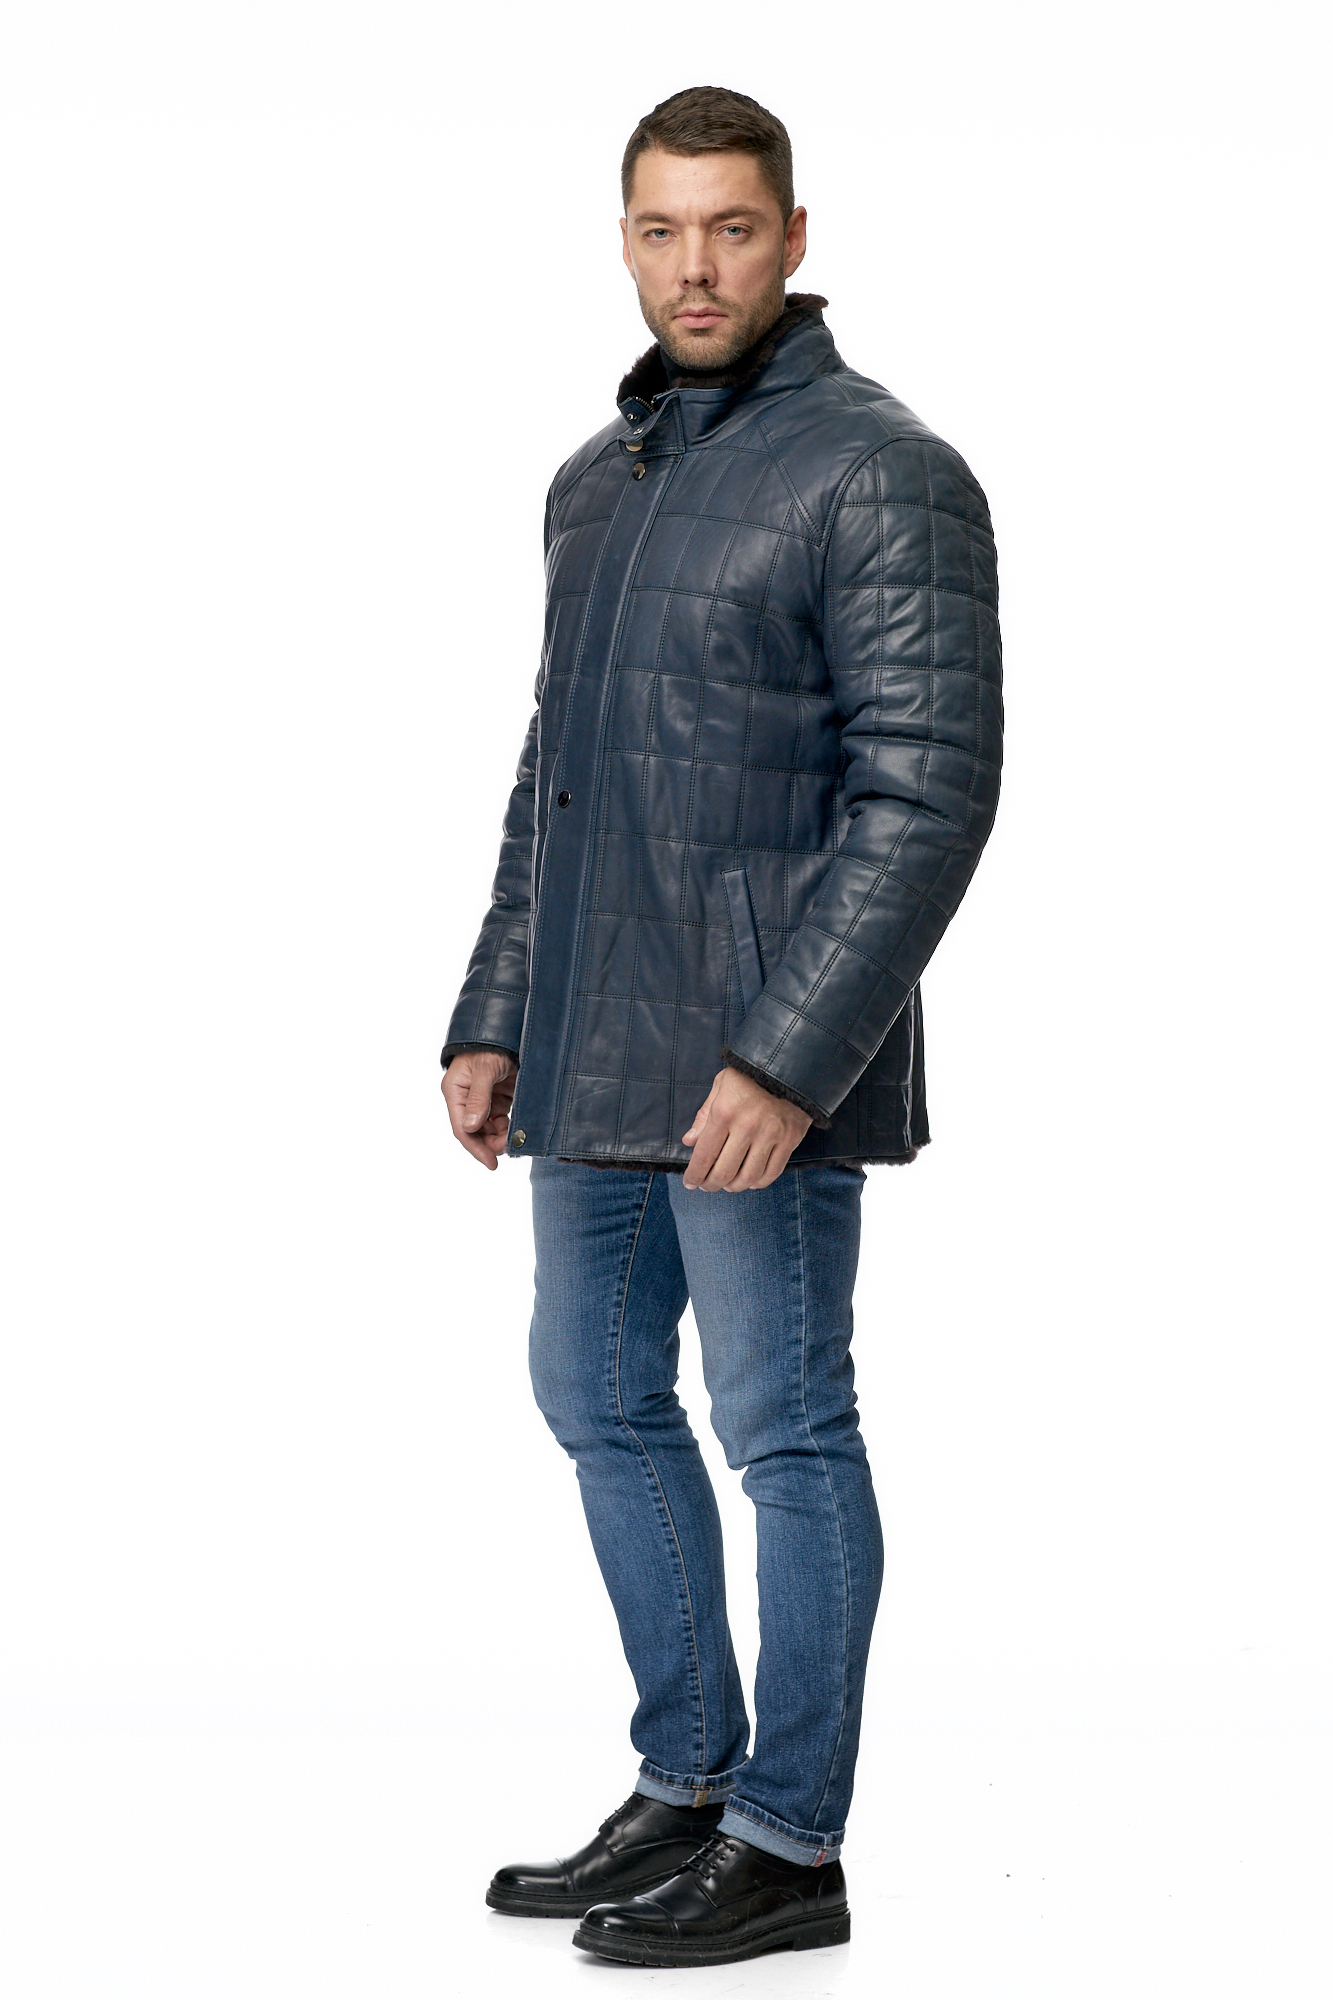 Мужская кожаная куртка из натуральной кожи на меху с воротником 8009055-2